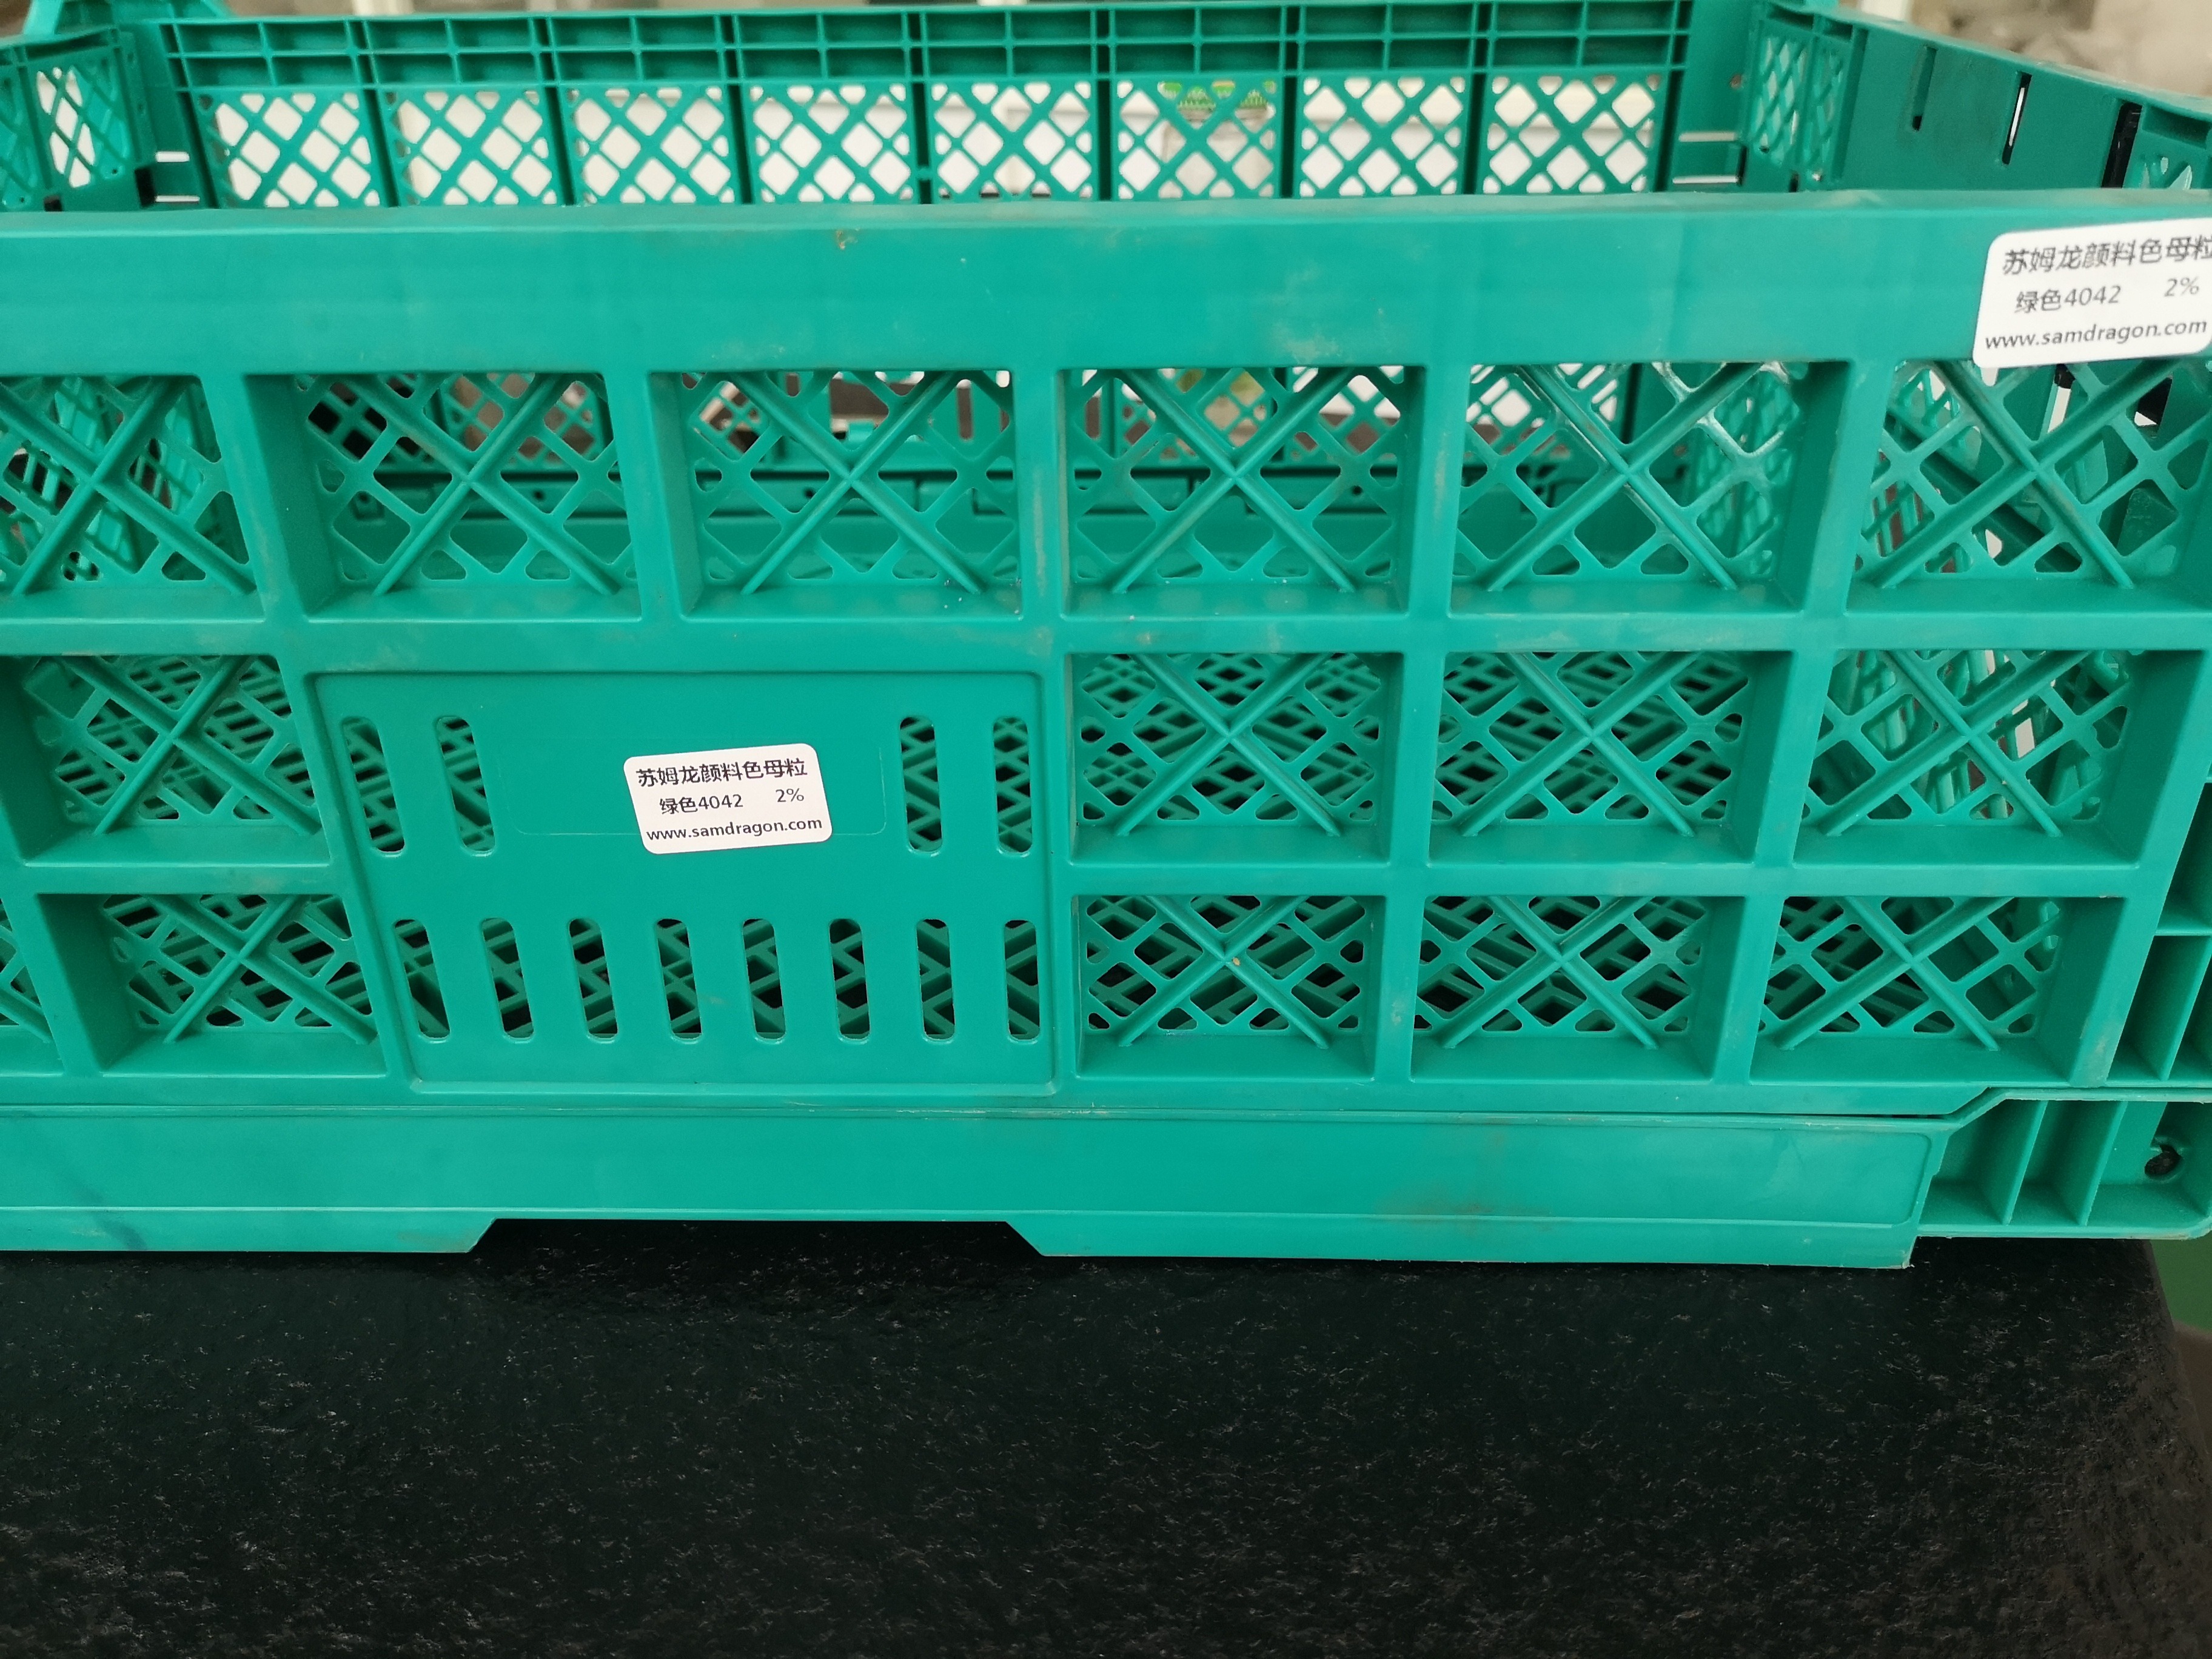 苏姆龙颜料色母粒 新产出可折叠水果筐 可折叠周转箱专用绿色色母粒4042 颜色可定制